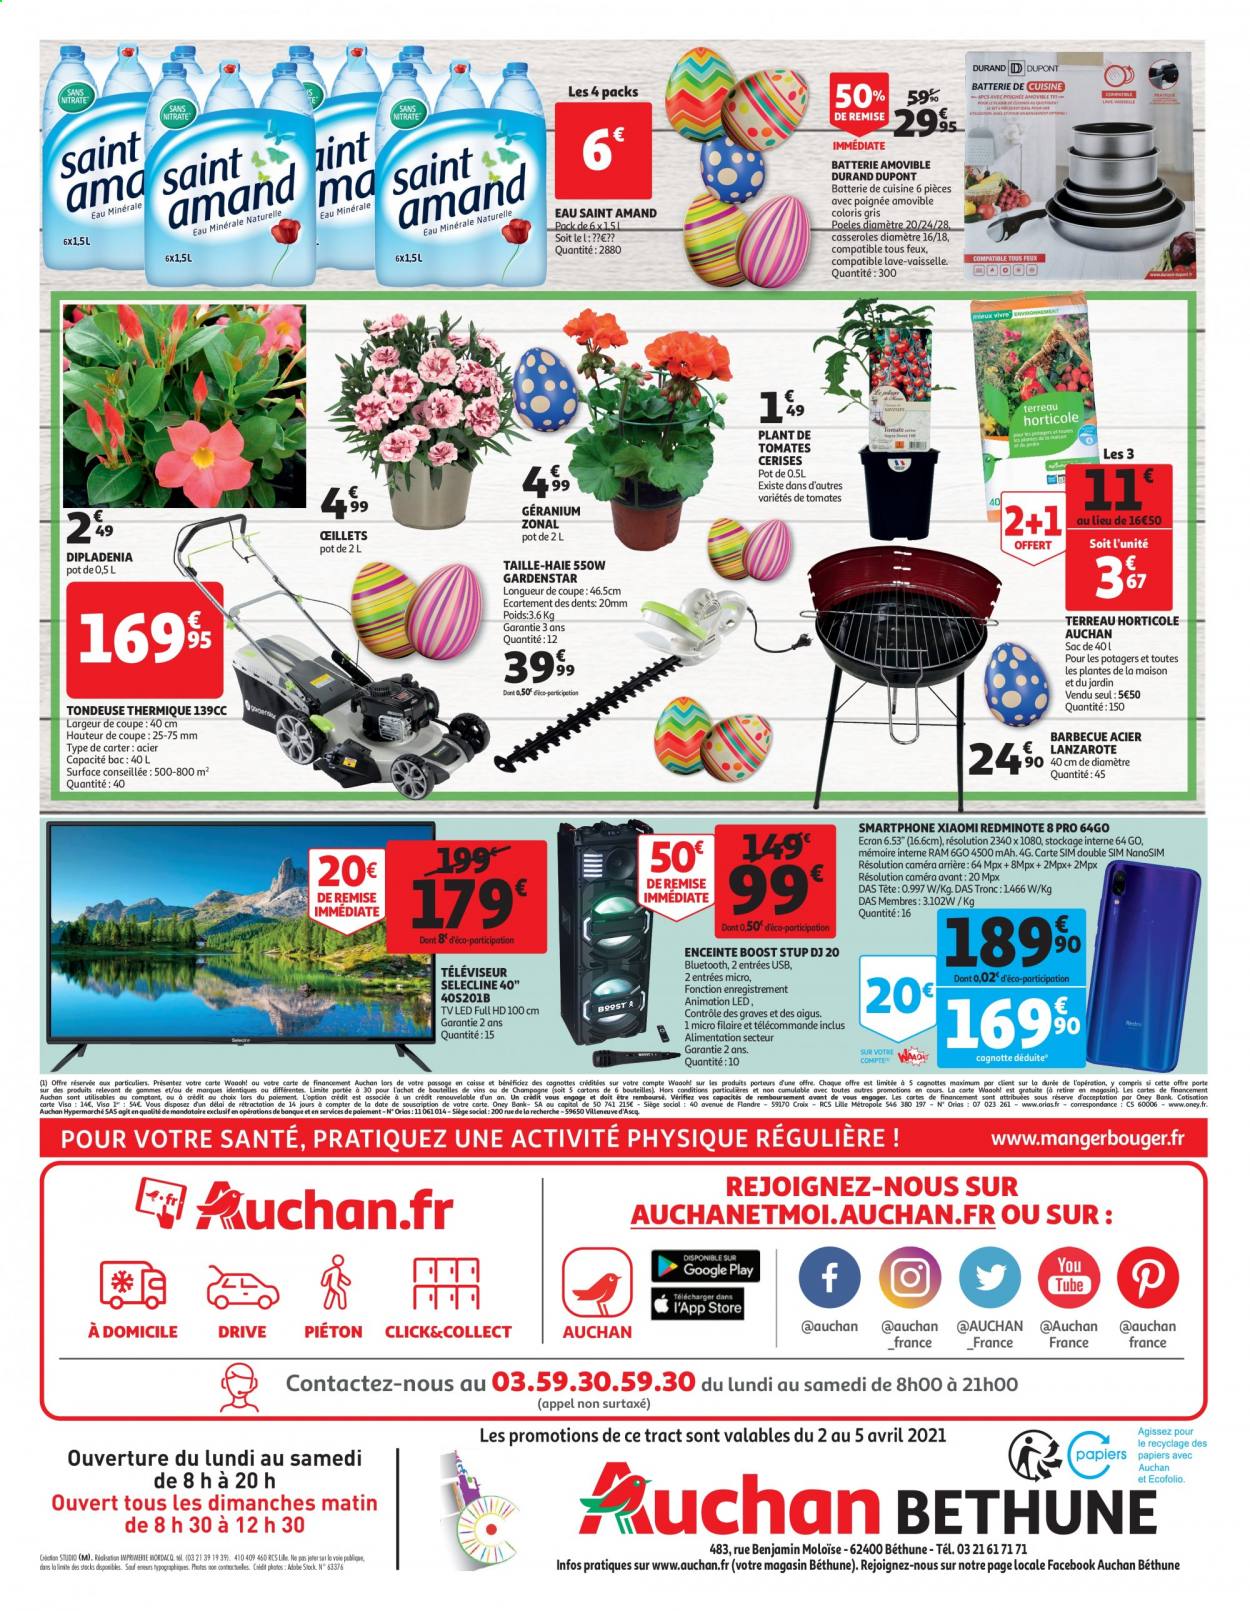 thumbnail - Catalogue Auchan - 02/04/2021 - 05/04/2021 - Produits soldés - poêle, tomates cerises, vin, batterie de cuisine, casserole, Xiaomi, smartphone, téléviseur, téléviseur LED, enceinte, enceinte bluetooth, tondeuse, taille haie, barbecue, terreau, dipladenia. Page 2.